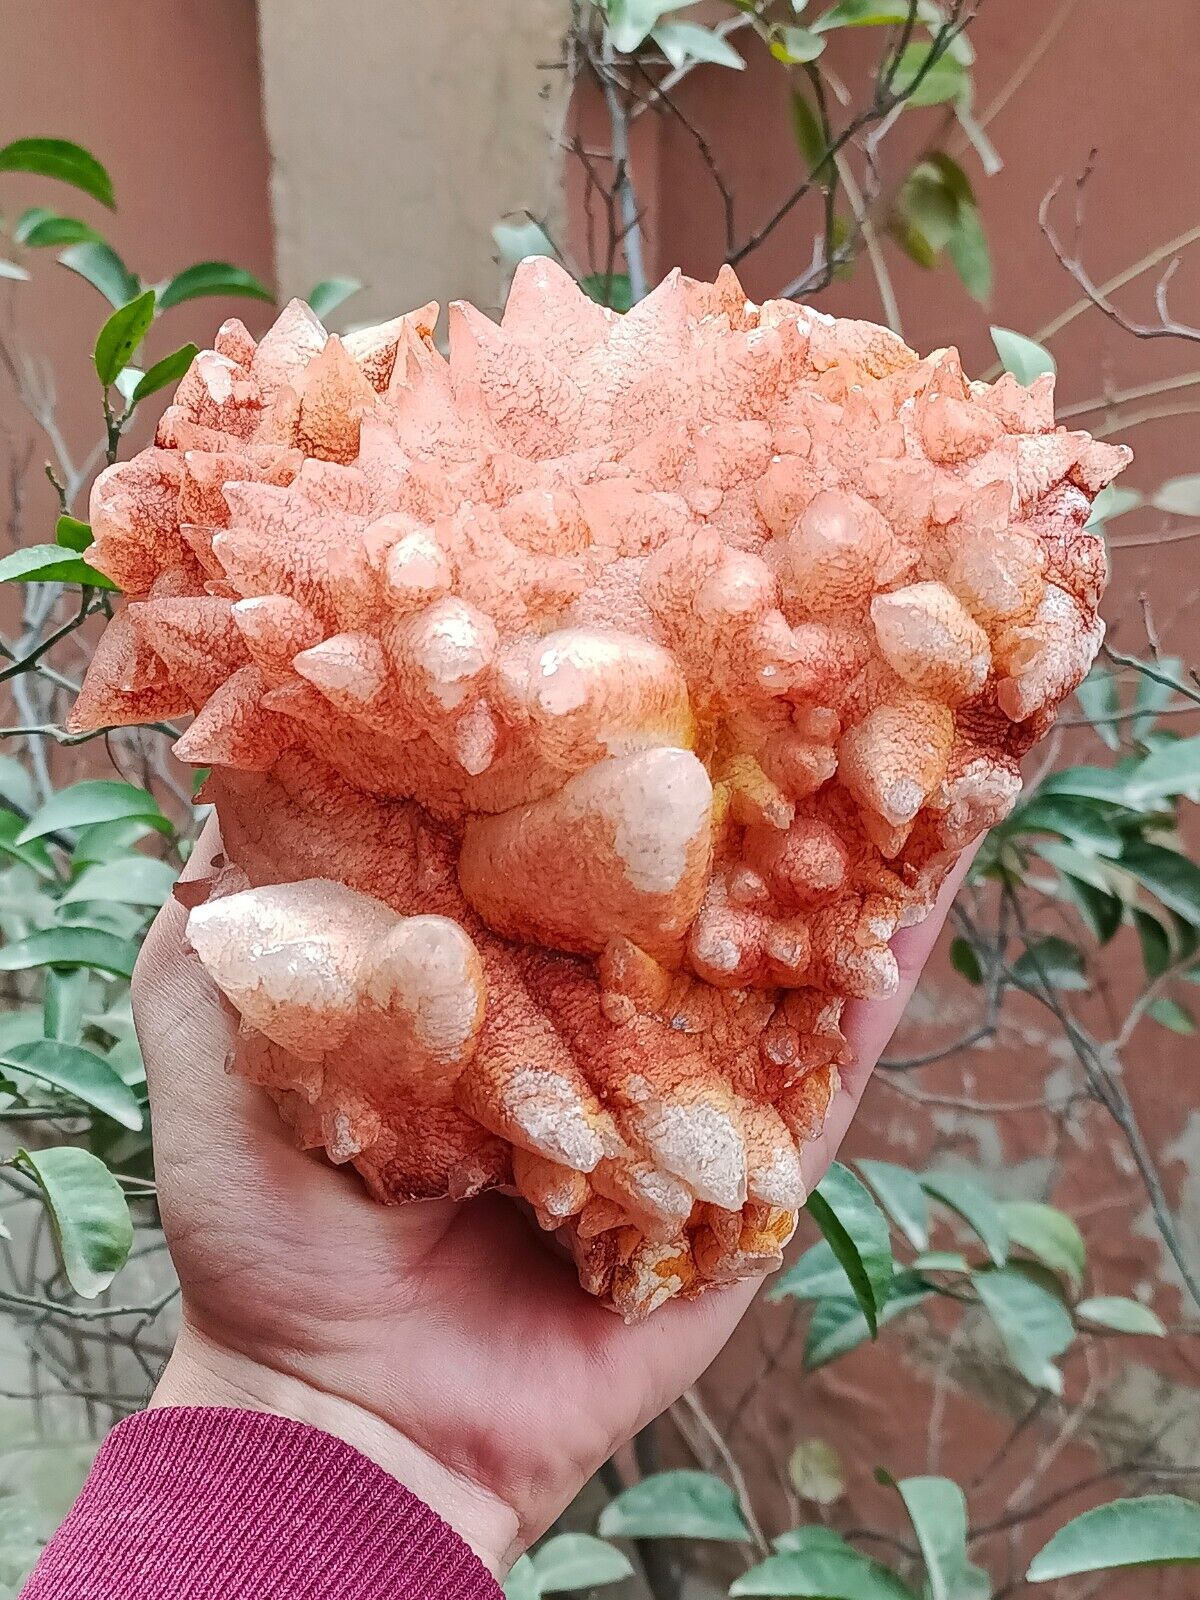 1.5kg Natural Gemstone Orange Dog Tooth Calcite Cluster Mineral Specimen Crystal